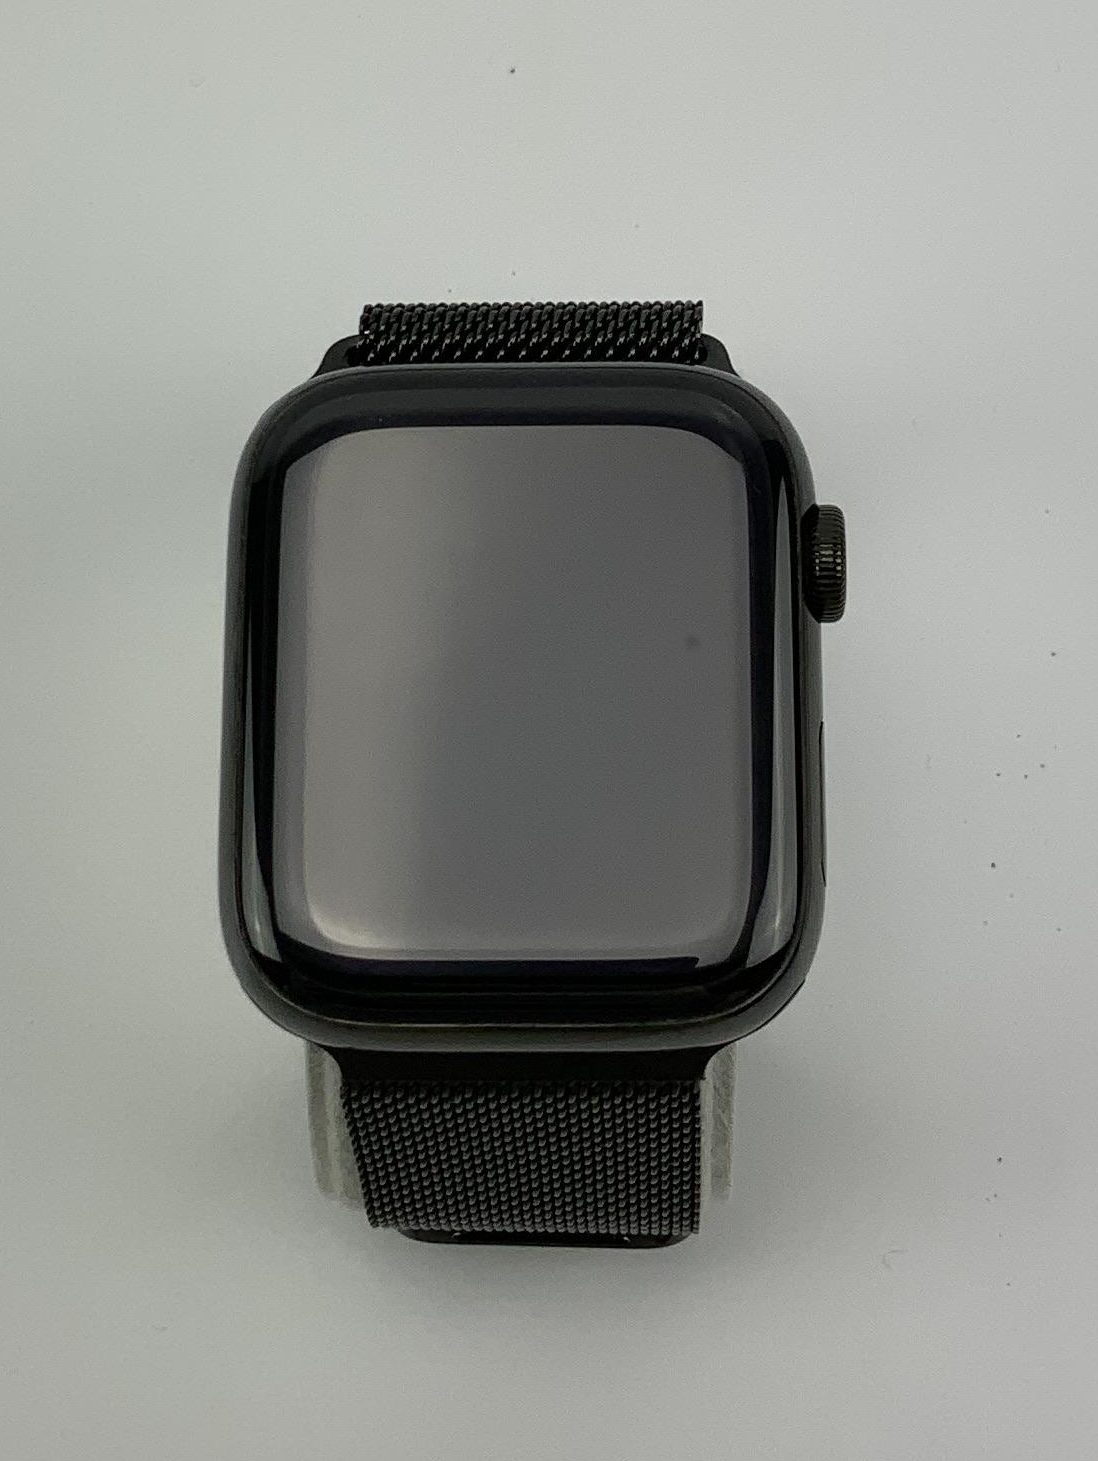 Watch Series 4 Steel Cellular (44mm), Space Black, Space Black Milanese Loop, immagine 1